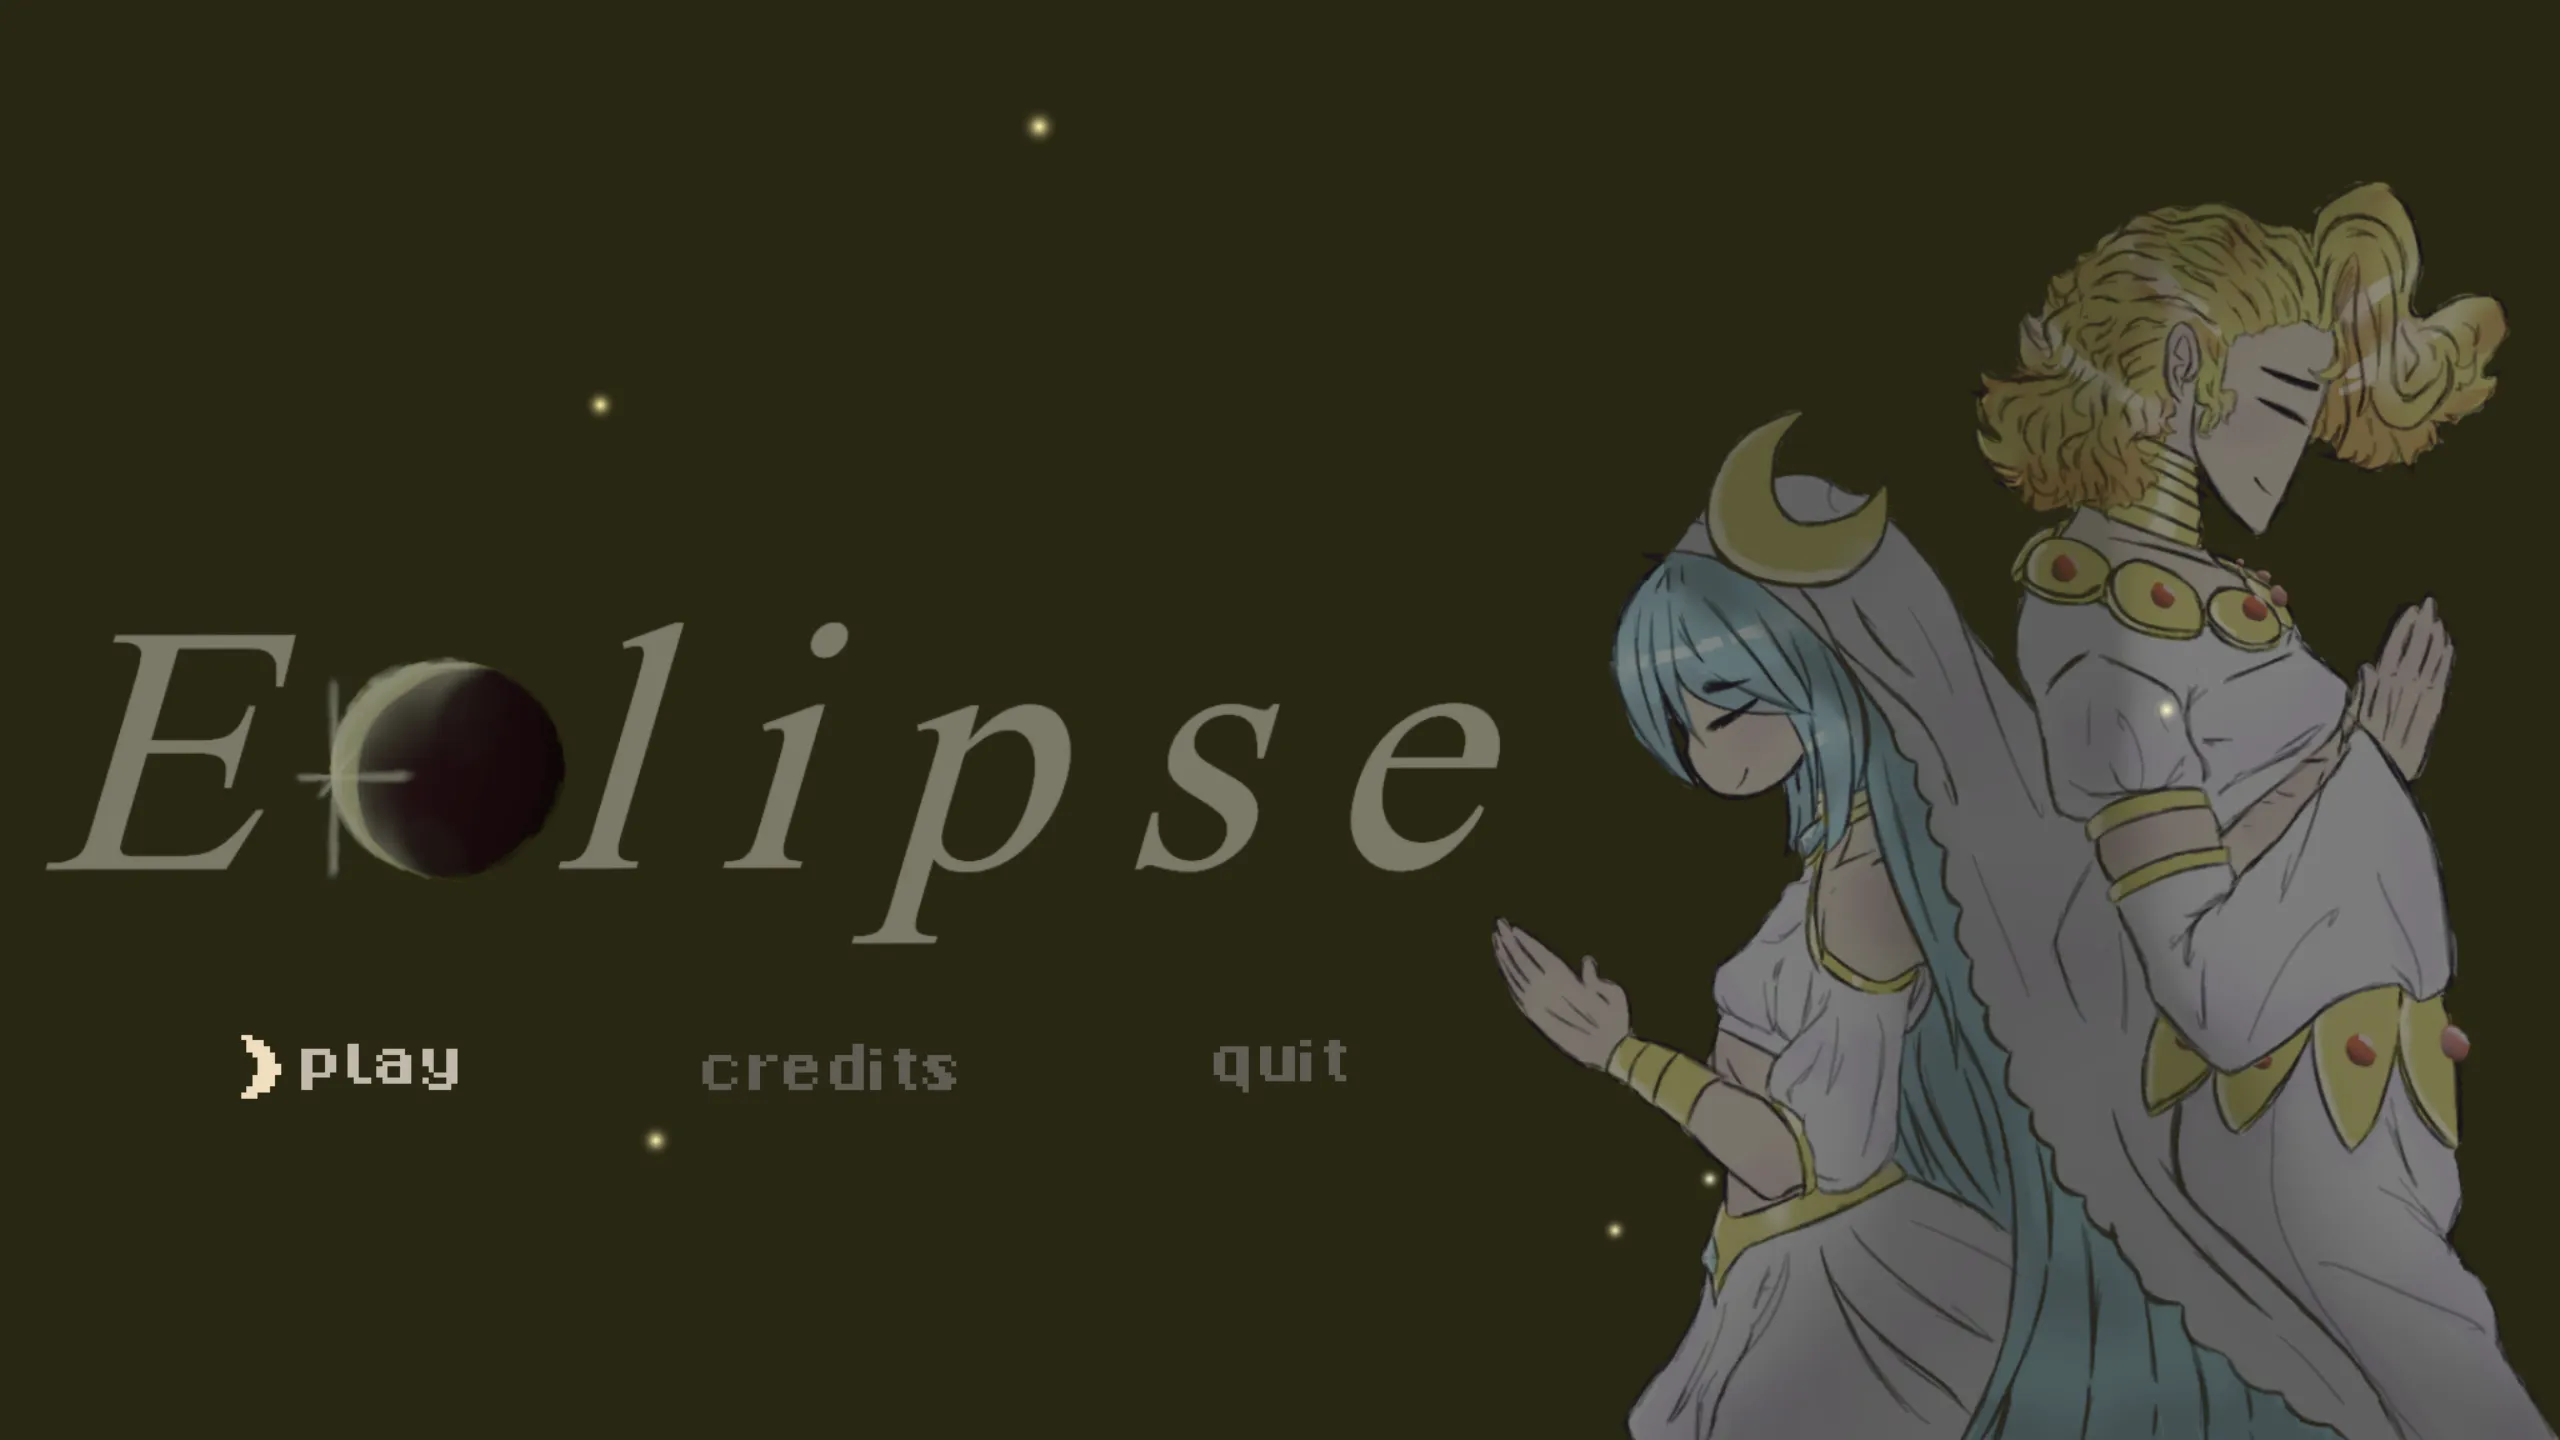 Eclipse's main menu.